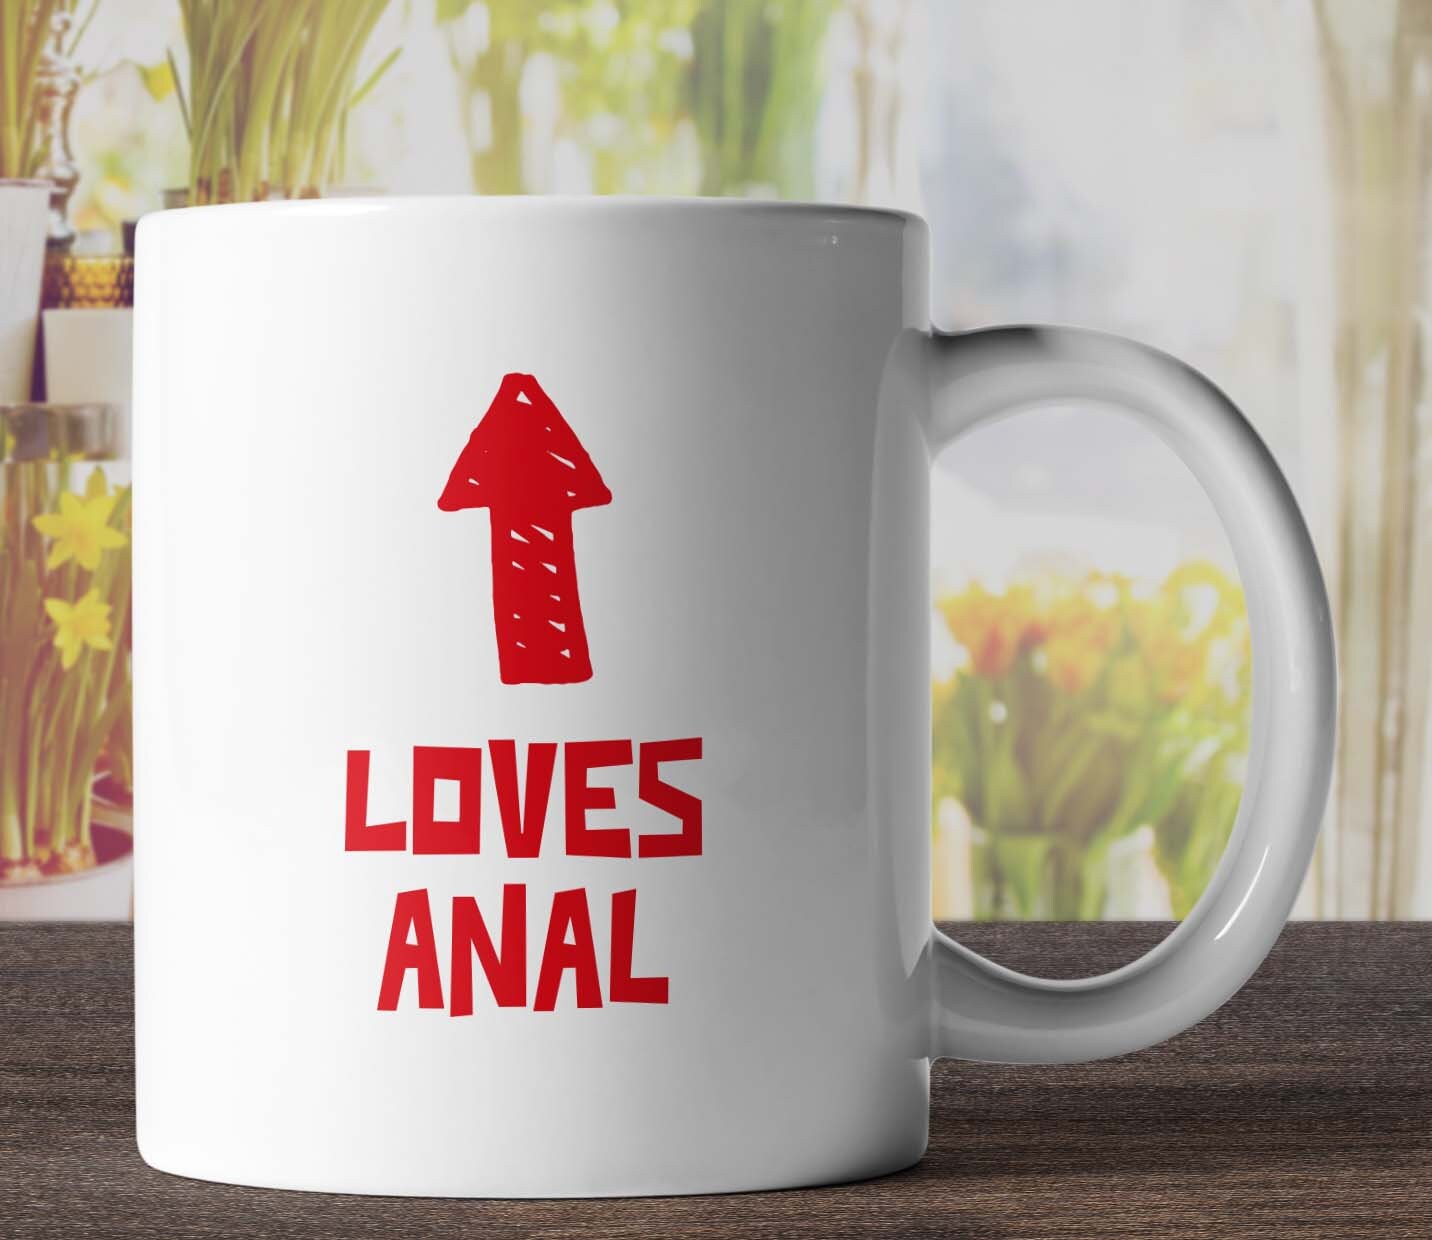 Loves Anal Arrow Mug Funny Mugs Rude Mugs Offensive Mugs Etsy